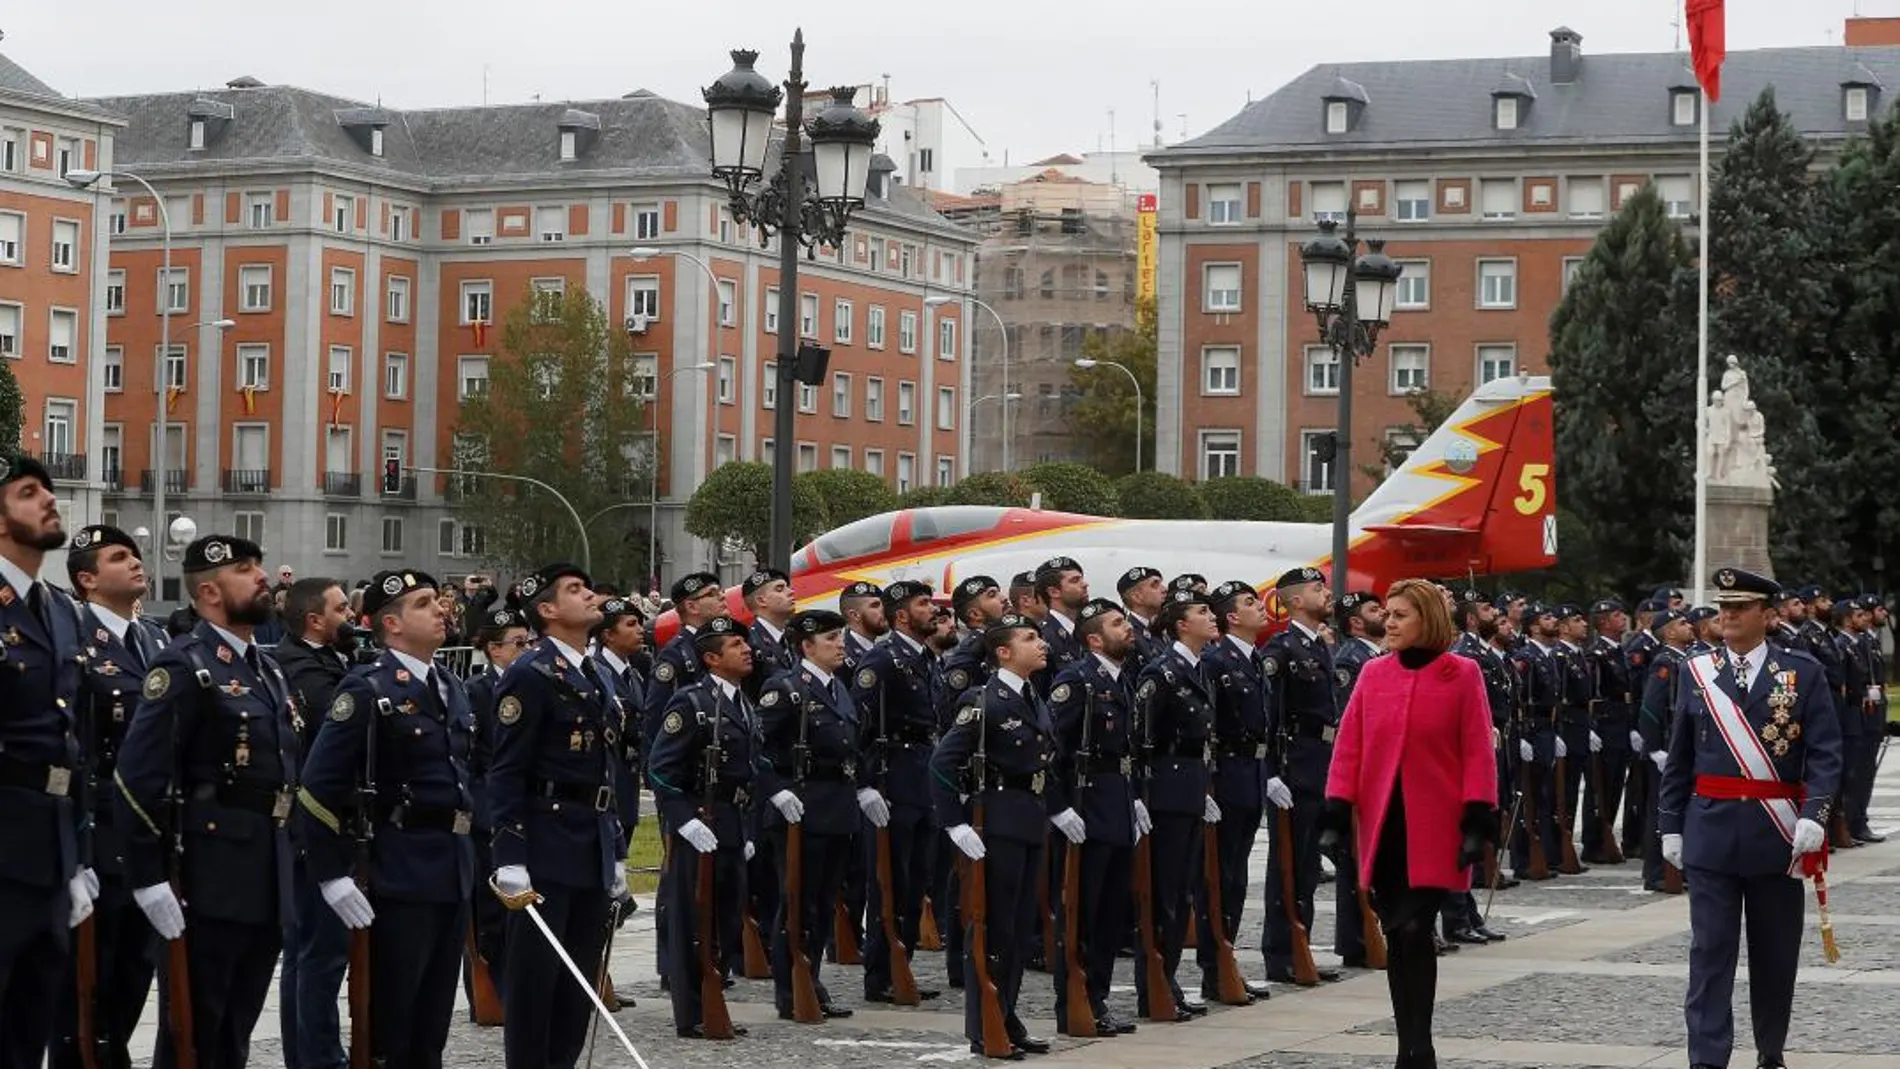 La ministra de Defensa, María Dolores de Cospedal, preside la parada militar con motivo de la celebración de la Virgen de Loreto, patrona del Ejército del Aire. EFE/ Fernando Alvarado